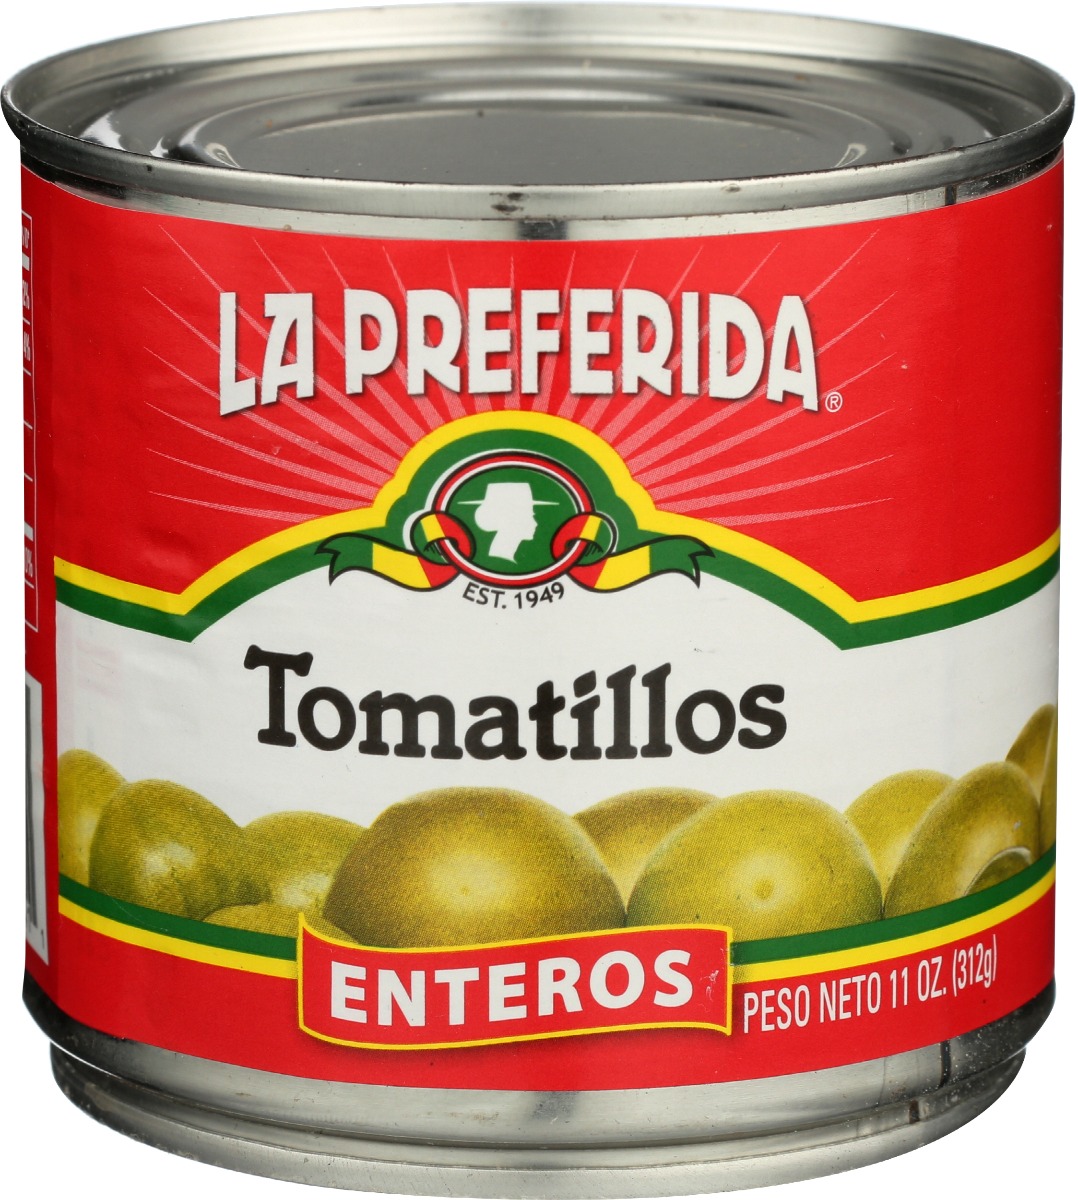 Picture of La Preferida KHRM00006772 11 oz Enteros Tomatillos